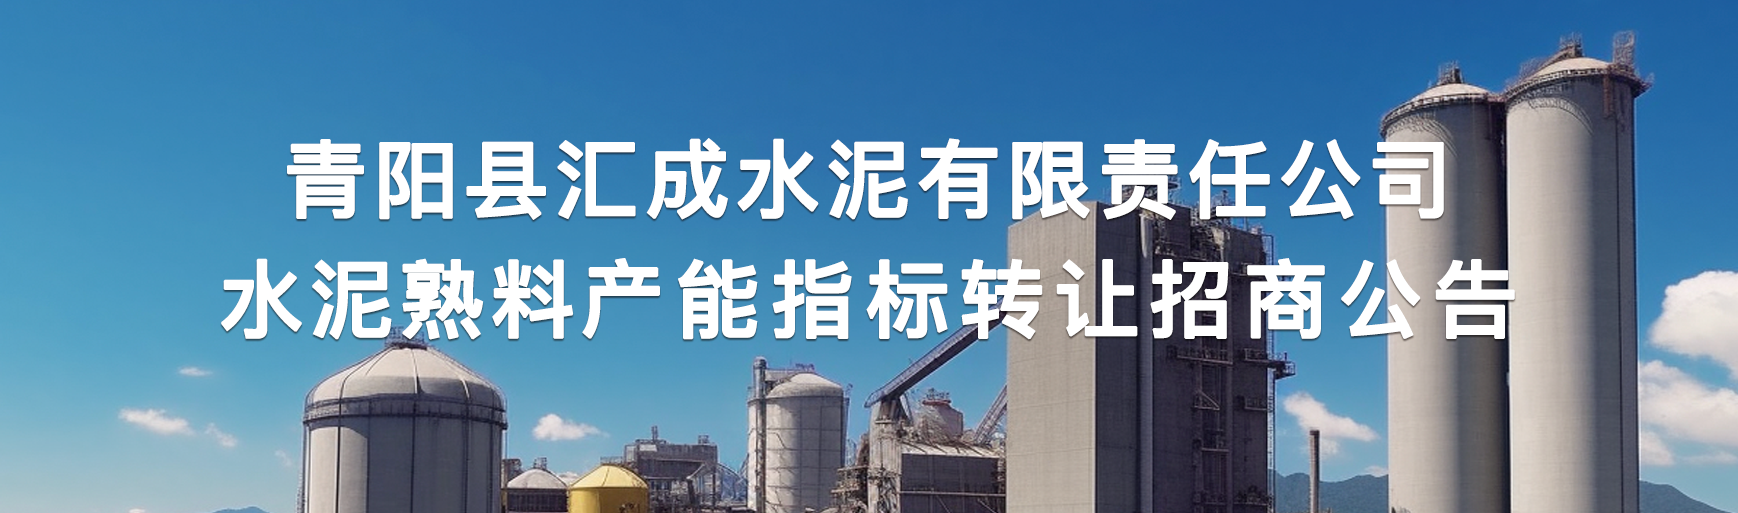 青阳县汇成水泥有限责任公司水泥熟料产能指标转让招商公告